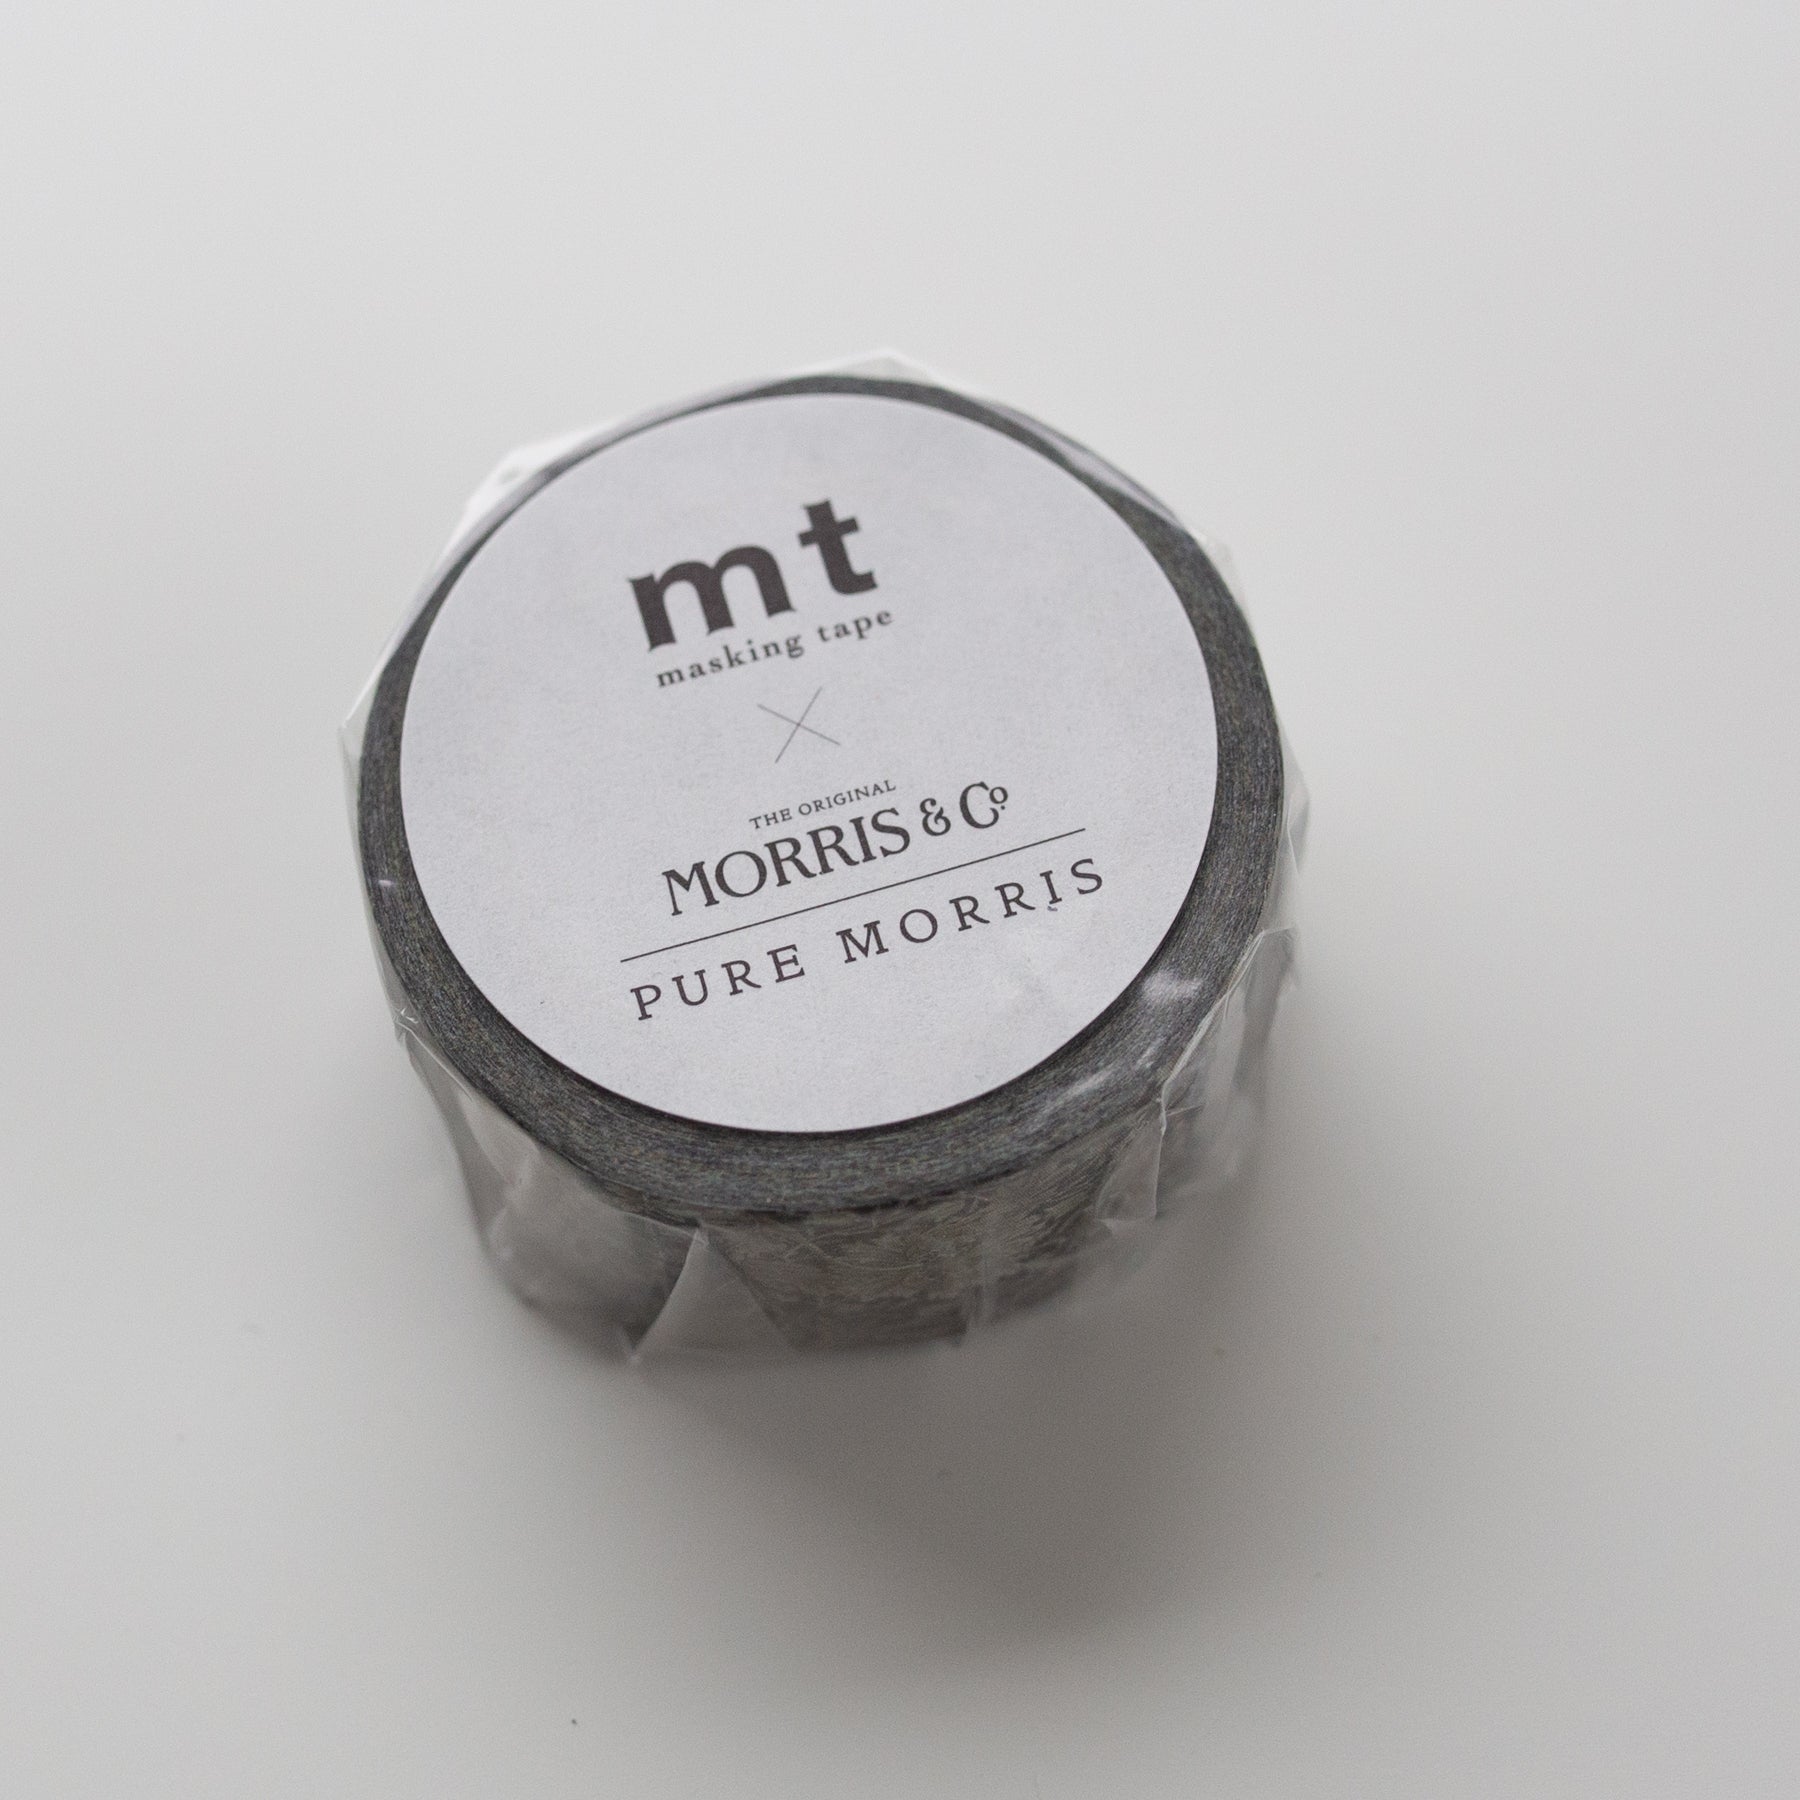 MT Masking Tape Pure Morris